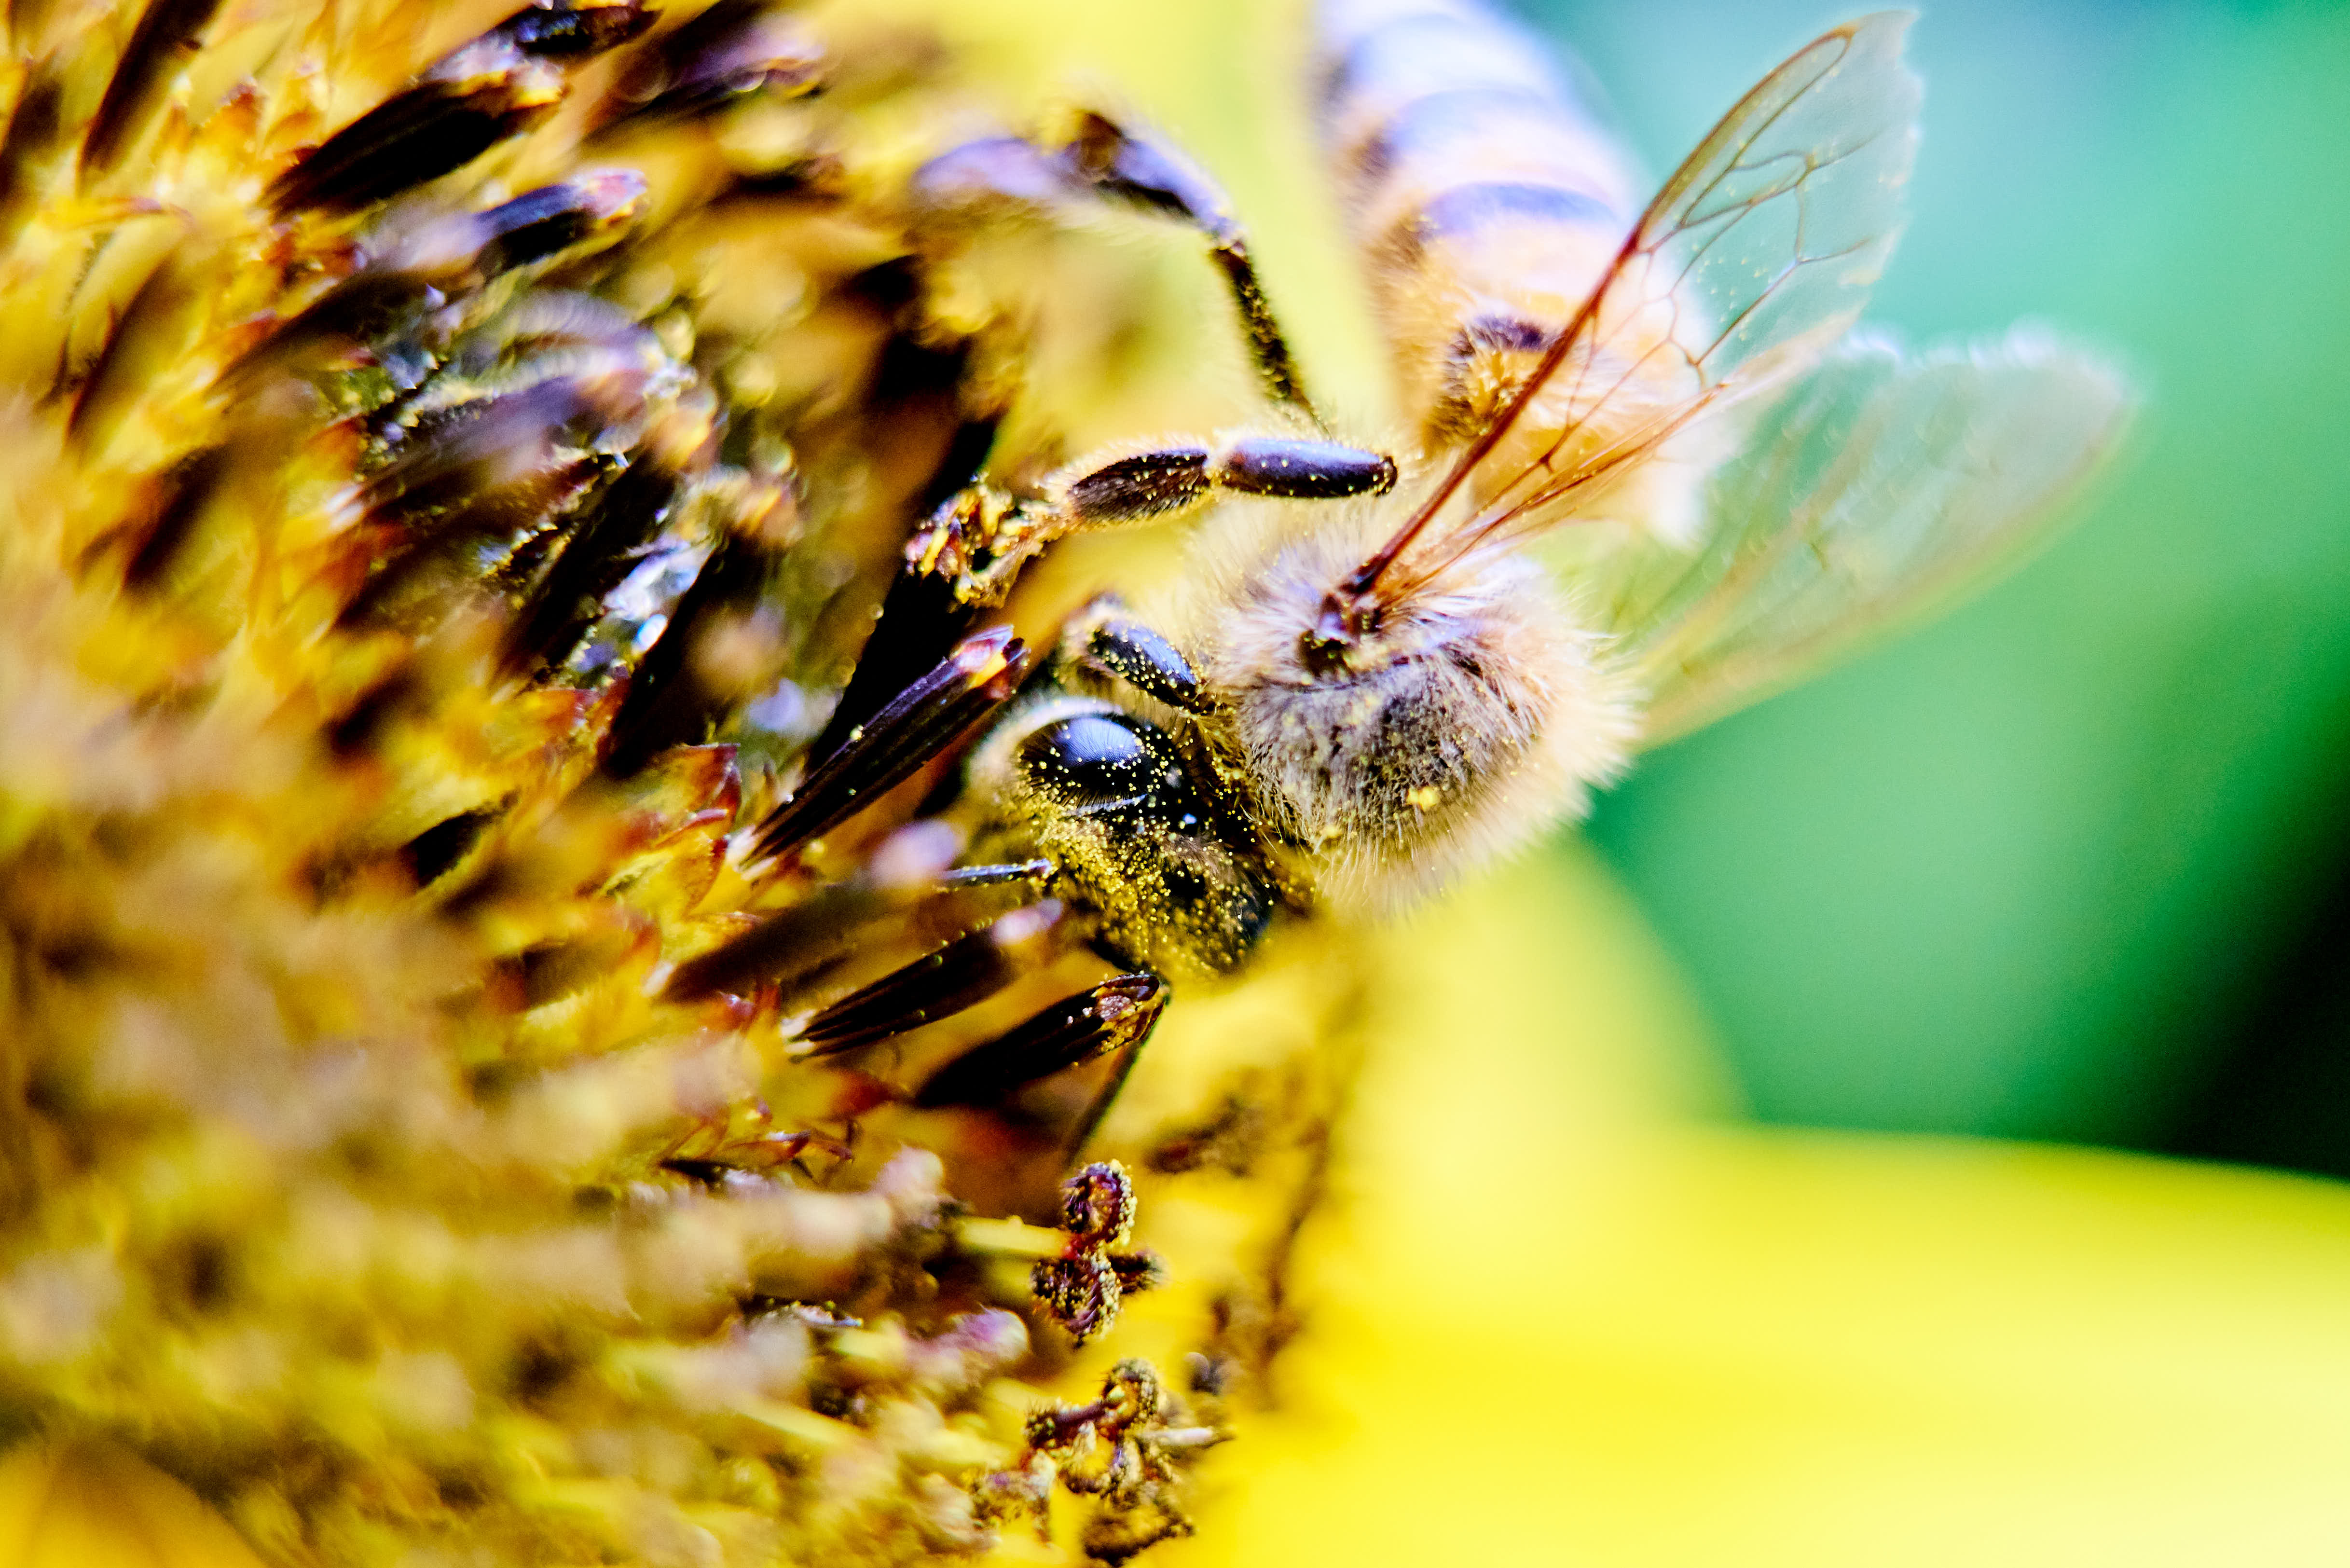 Abeja posada en flor extrayendo polen de una flor, se notan los detalles del polen en el cuerpo de la abeja. Ayudando a la polinización de las flores. Insecto, polinizador, girasol, flor, polen